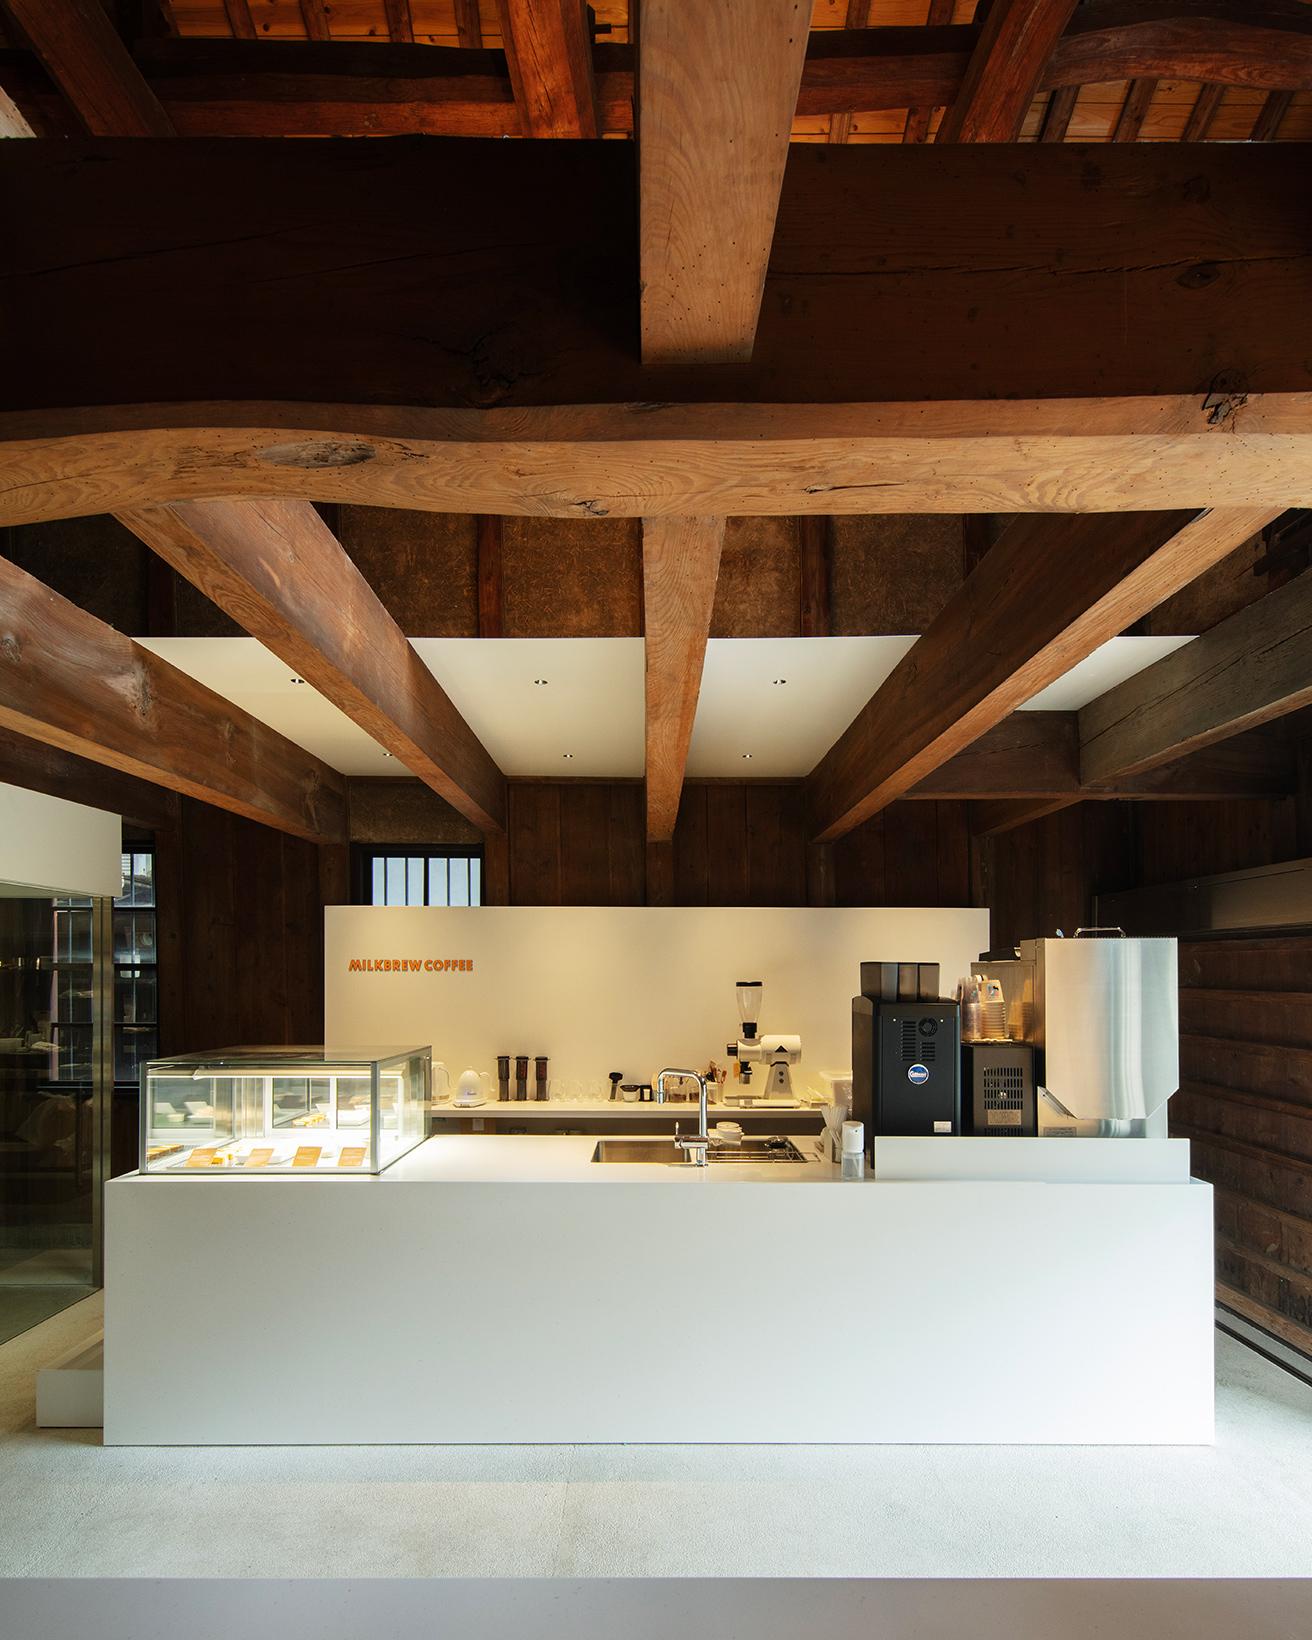 蔵の太い梁と人造大理石のカフェカウンターが心地よいコントラストを生む。